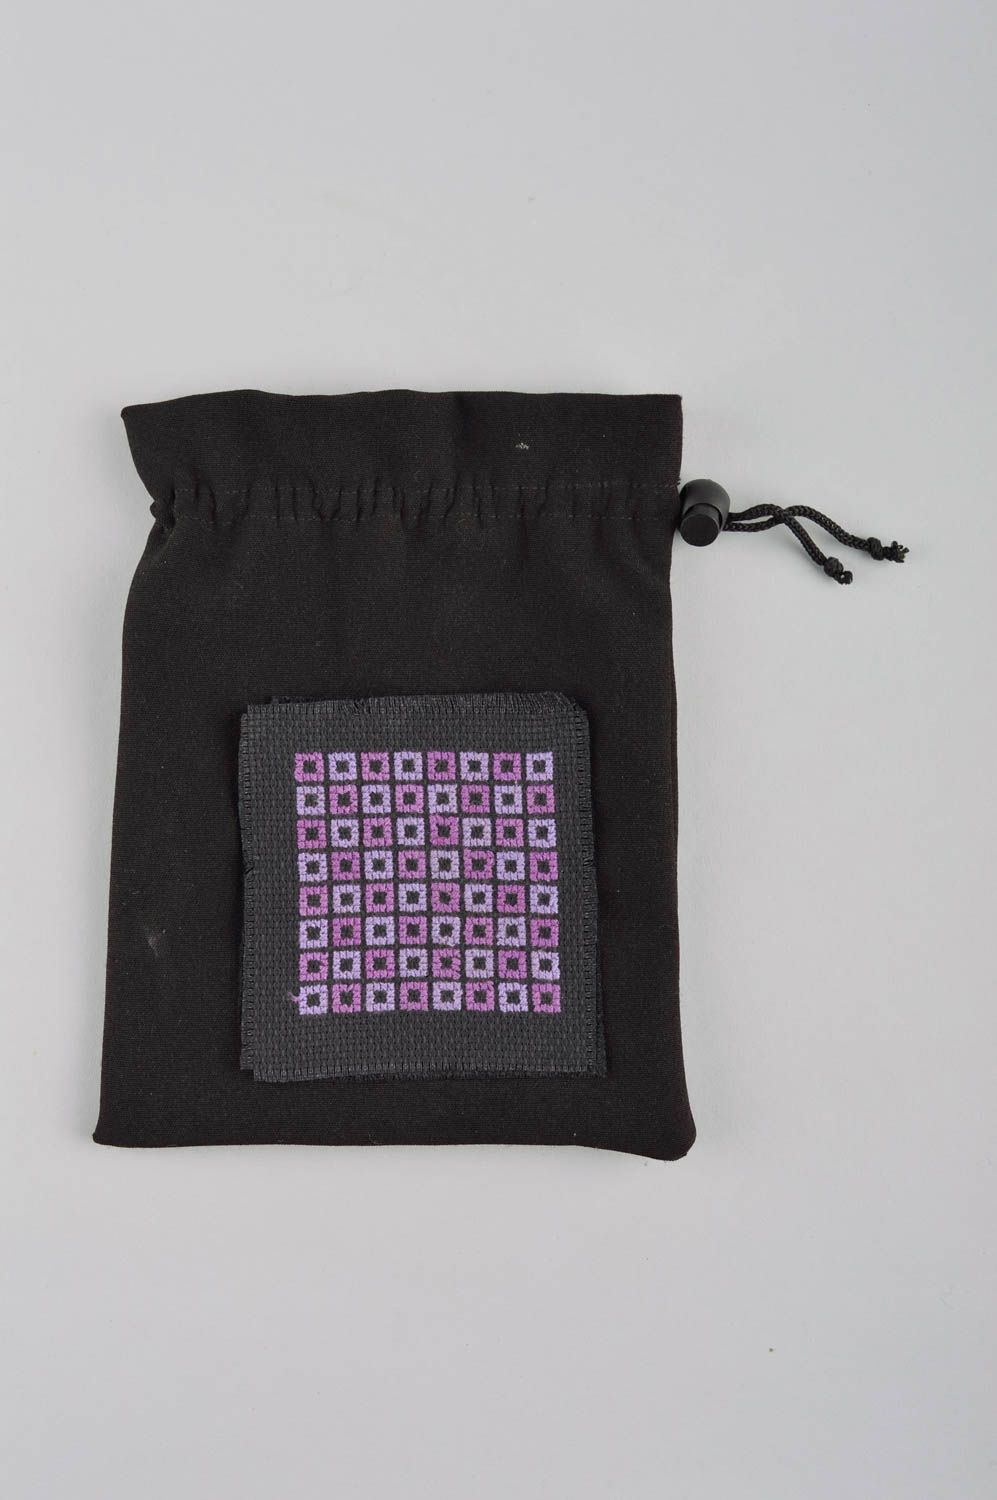 Кошелек из ткани ручной работы женский кошелек мешочек для монет вышитый фото 2